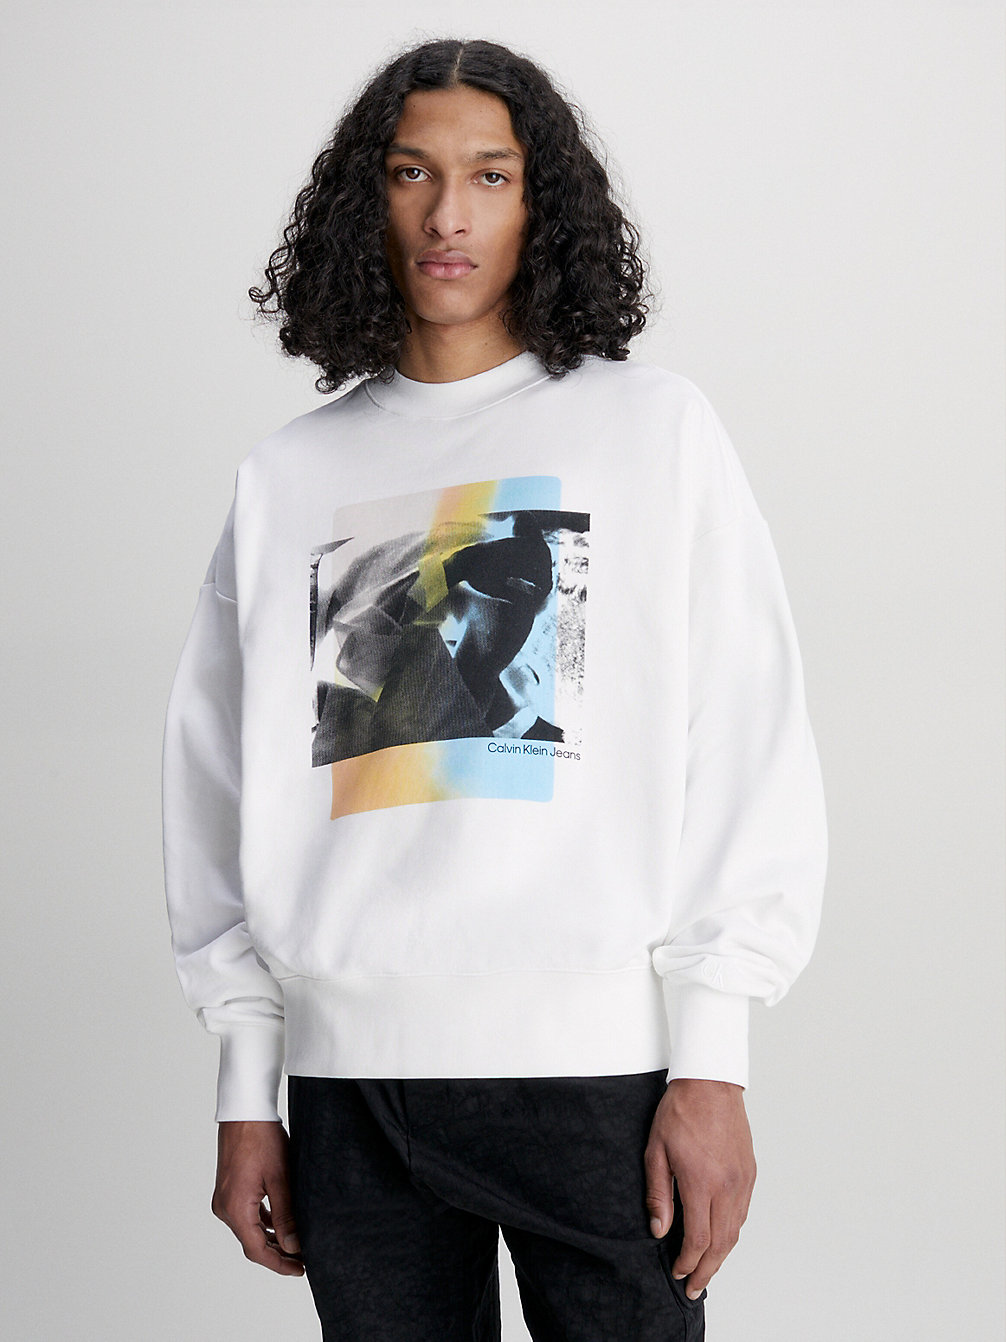 BRIGHT WHITE > Oversized Sweatshirt Mit Fotoprint > undefined men - Calvin Klein